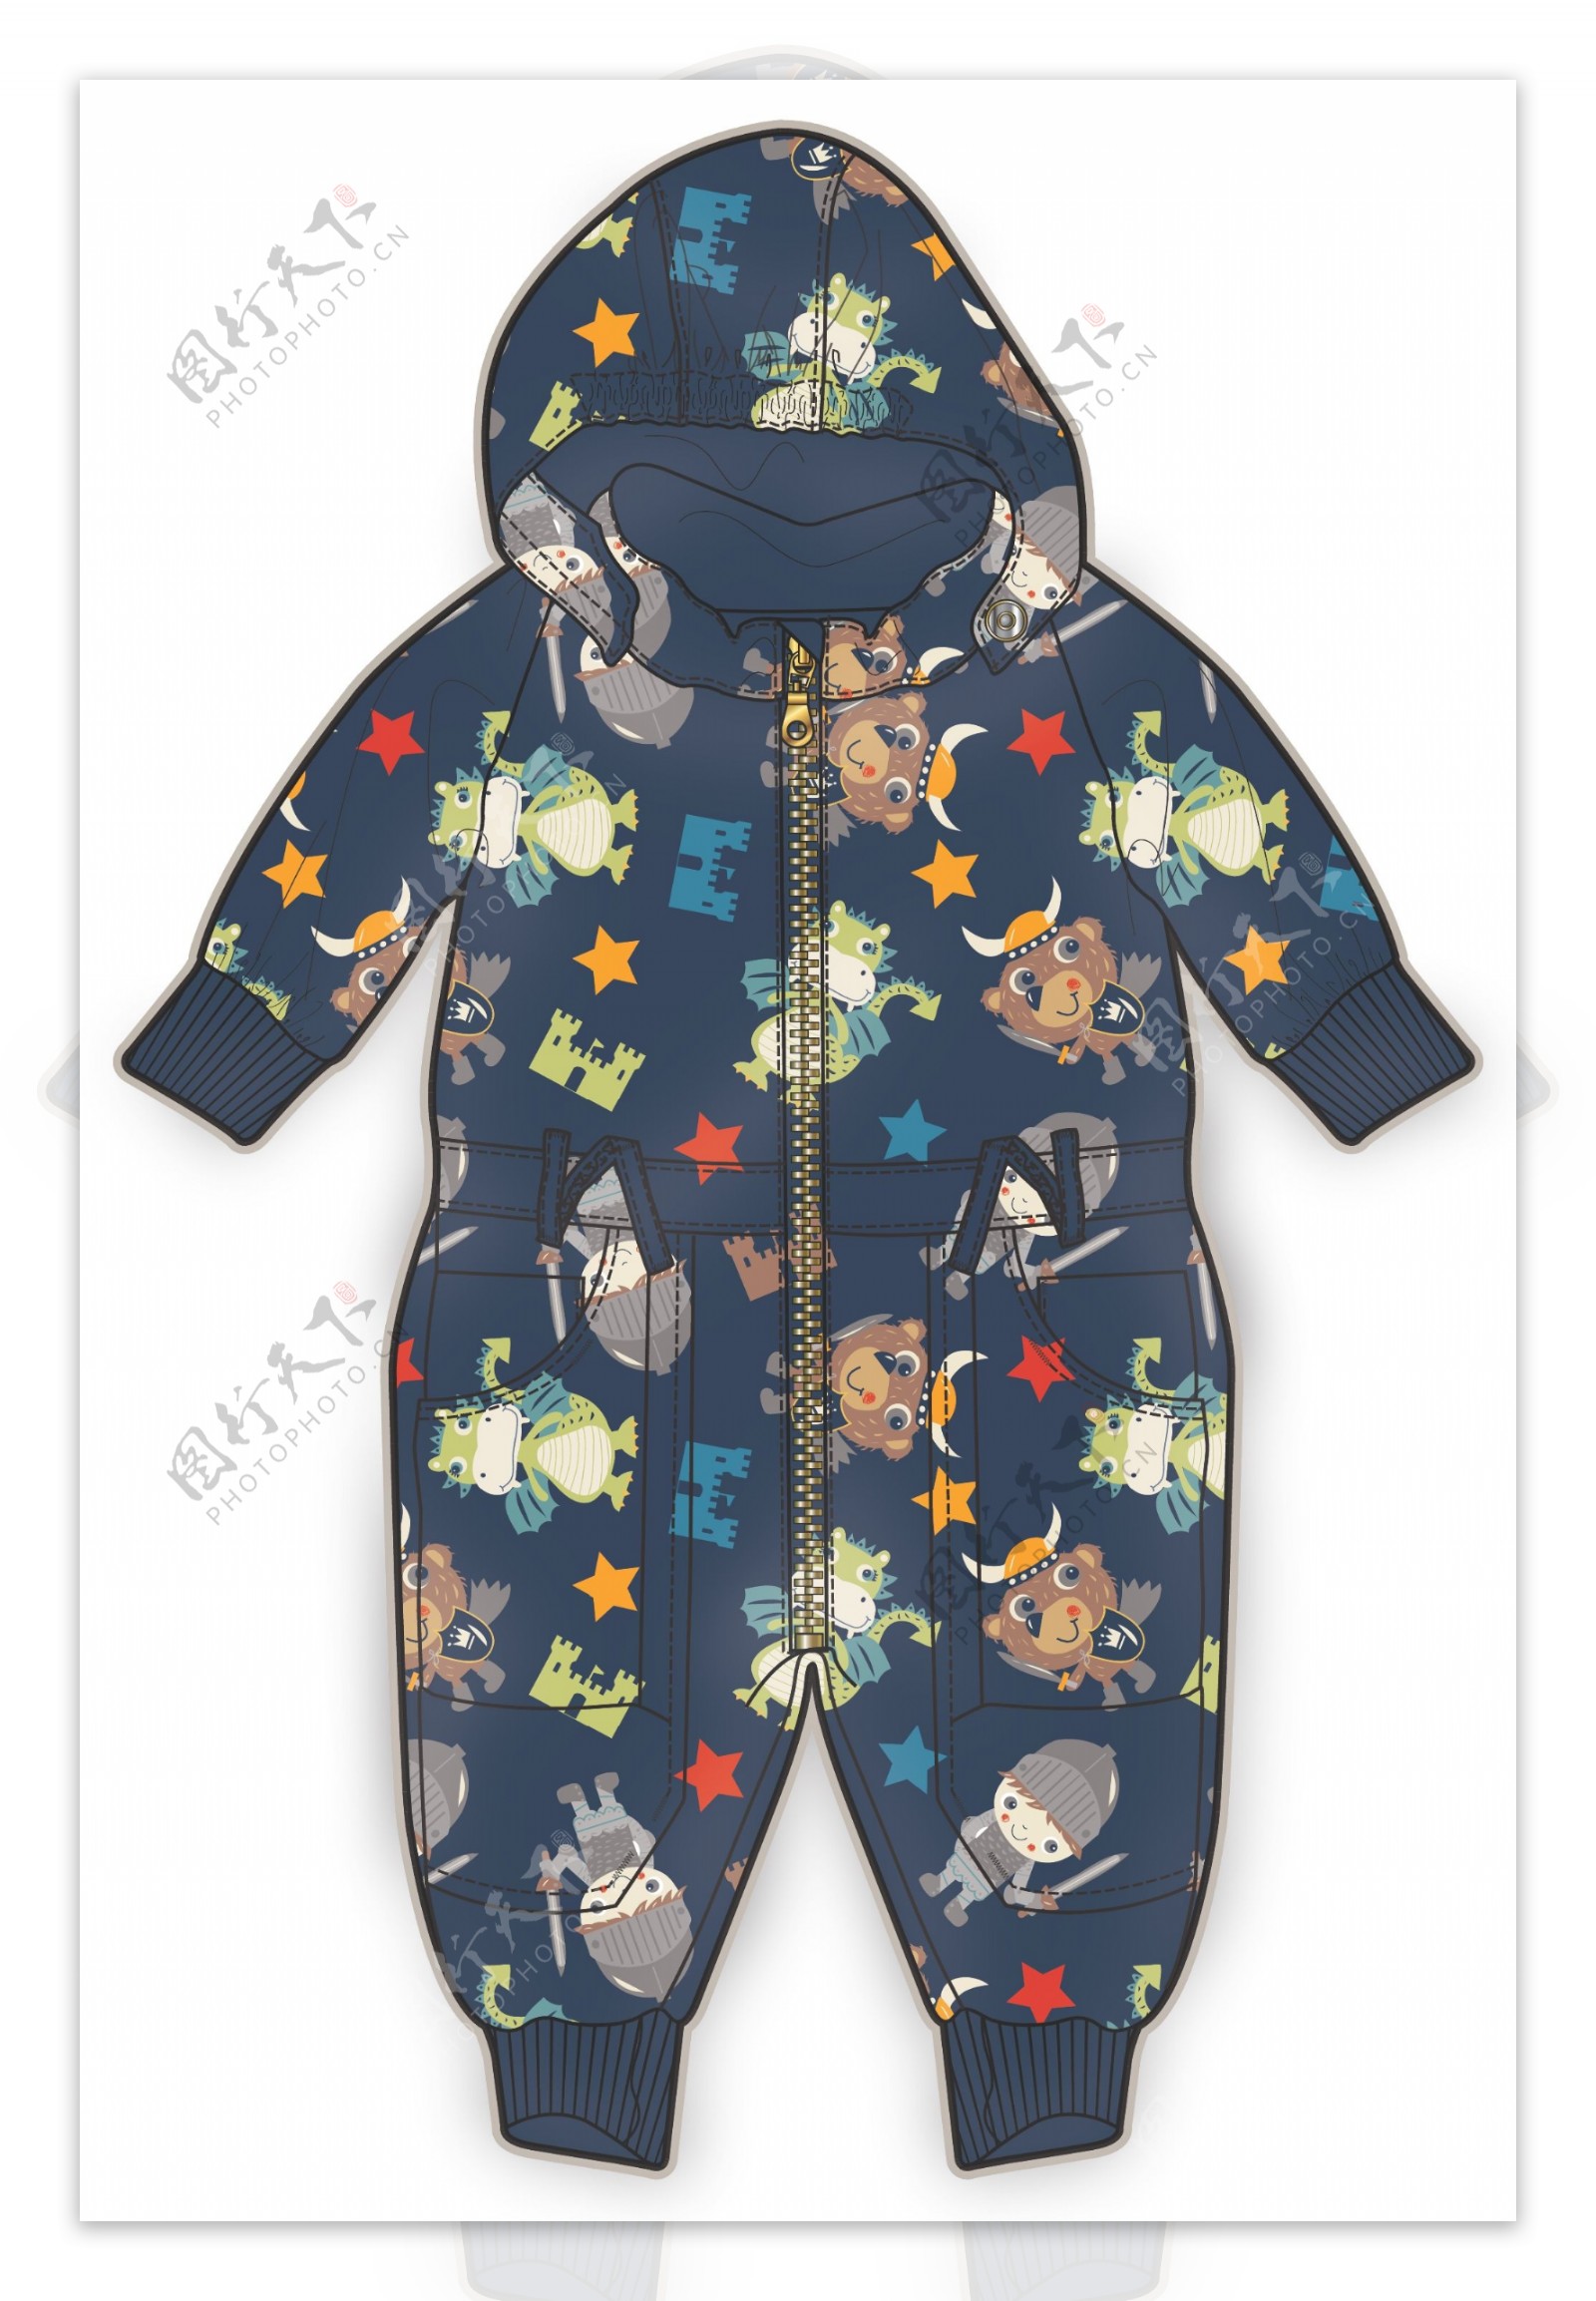 深蓝色婴儿服装彩色设计矢量素材